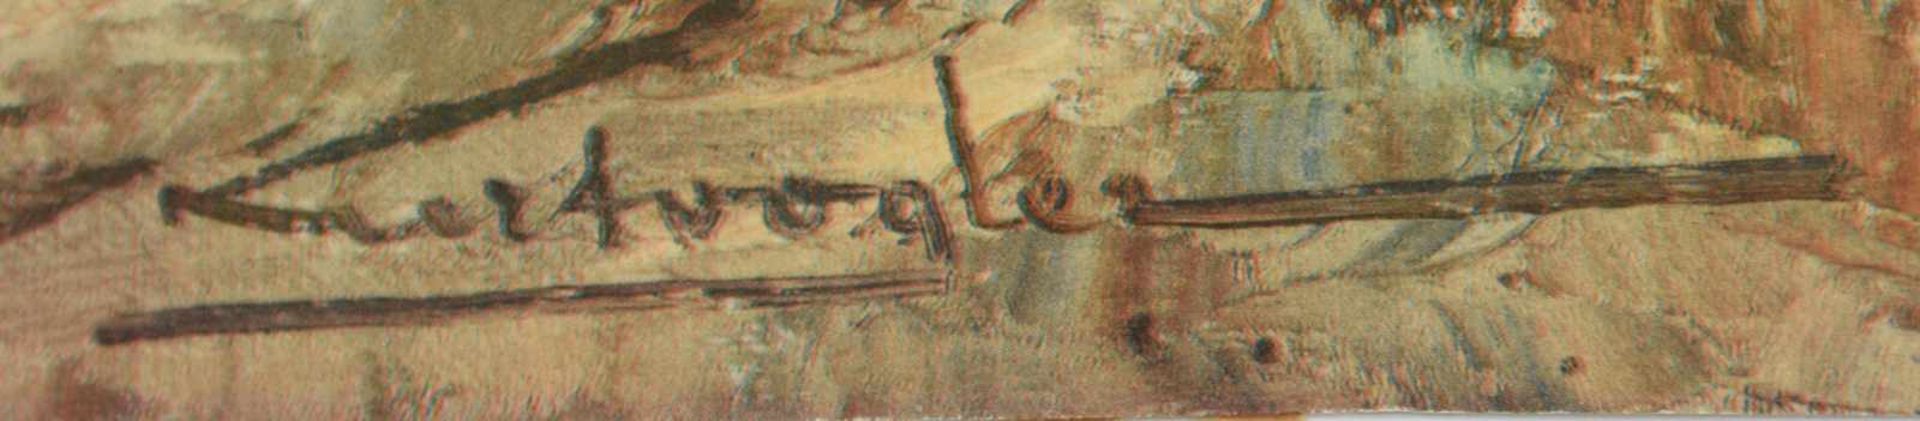 KONVOLUT DRUCKGRAFIK, polychrom handkoloriert bzw. gedruckt auf Papier, 19. und 20. Jahrhundert - Bild 3 aus 7